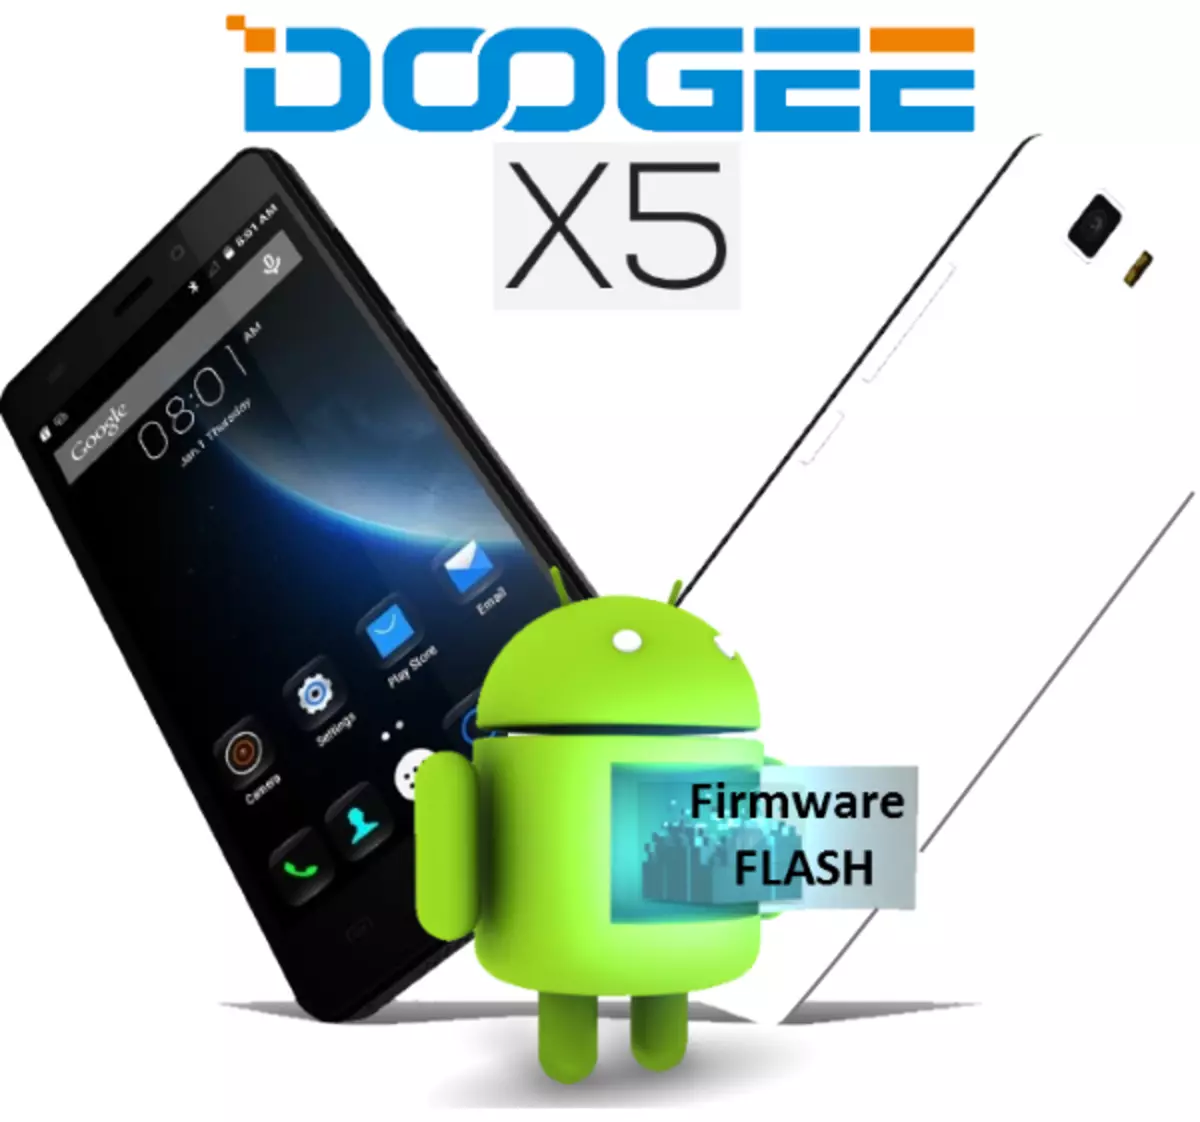 ວິທີການ Flash doogee x5